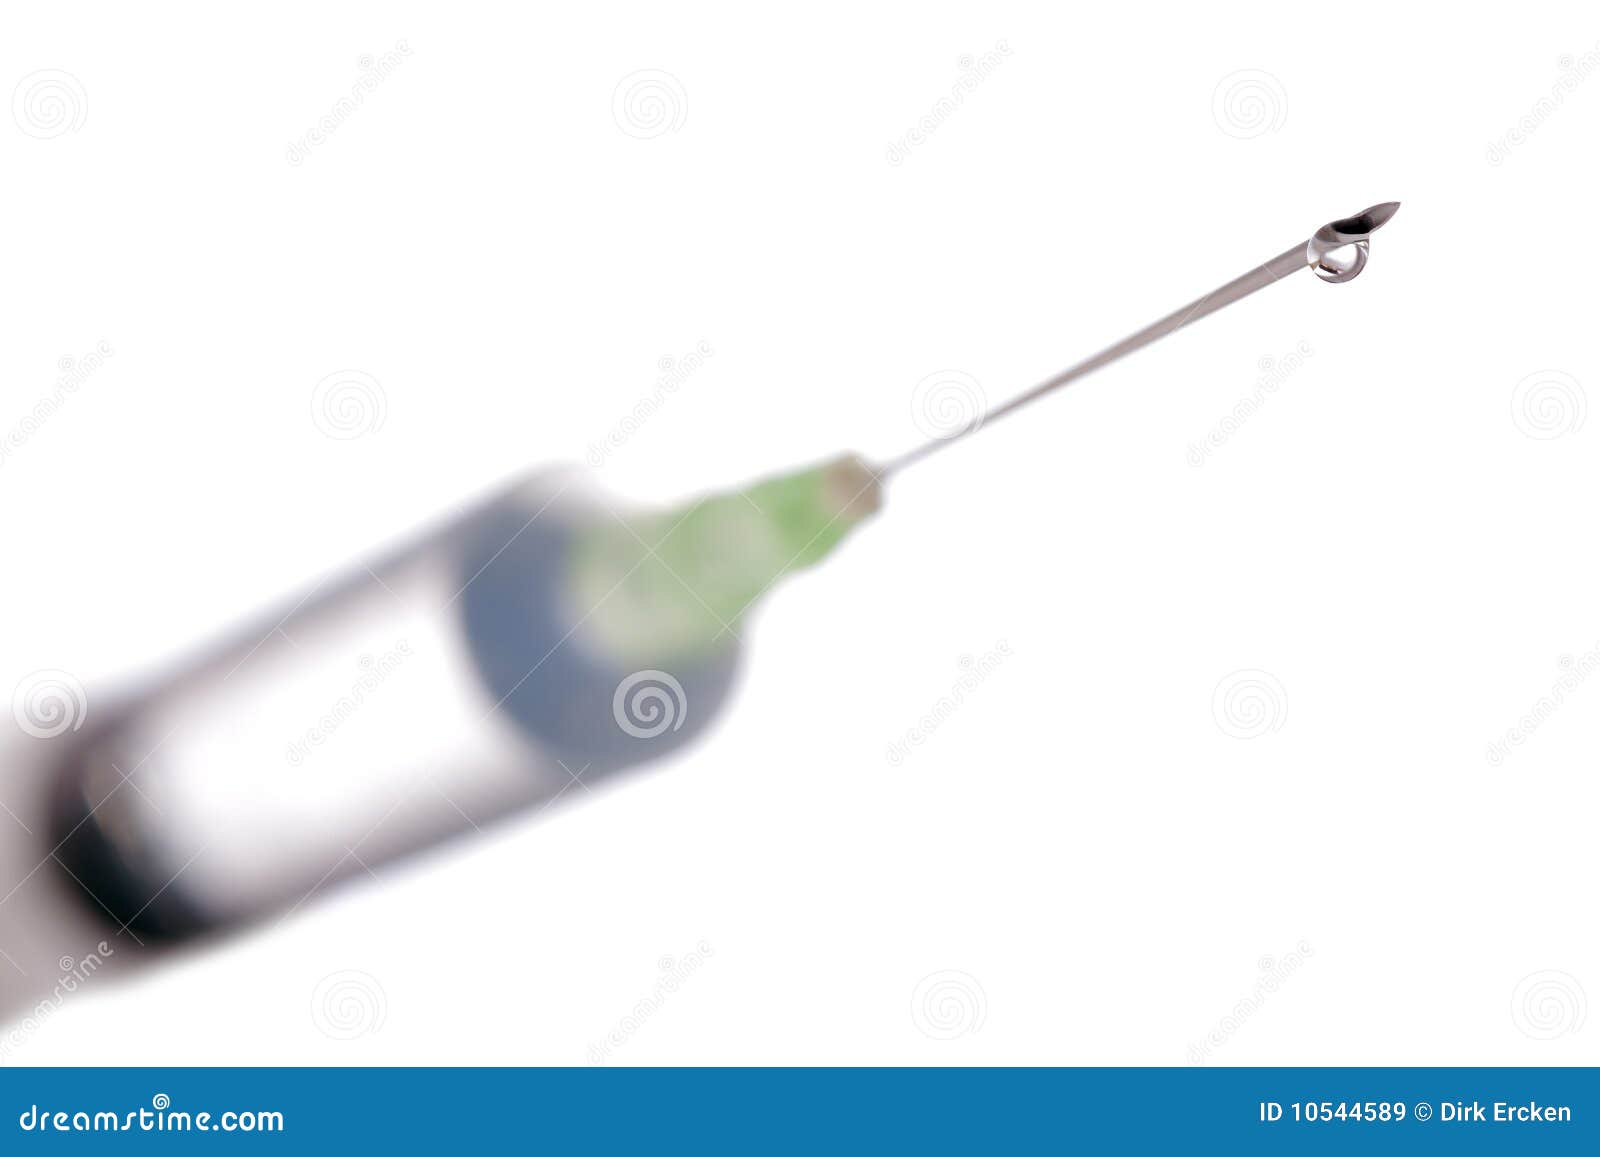 syringe needle vaccination or flu shot